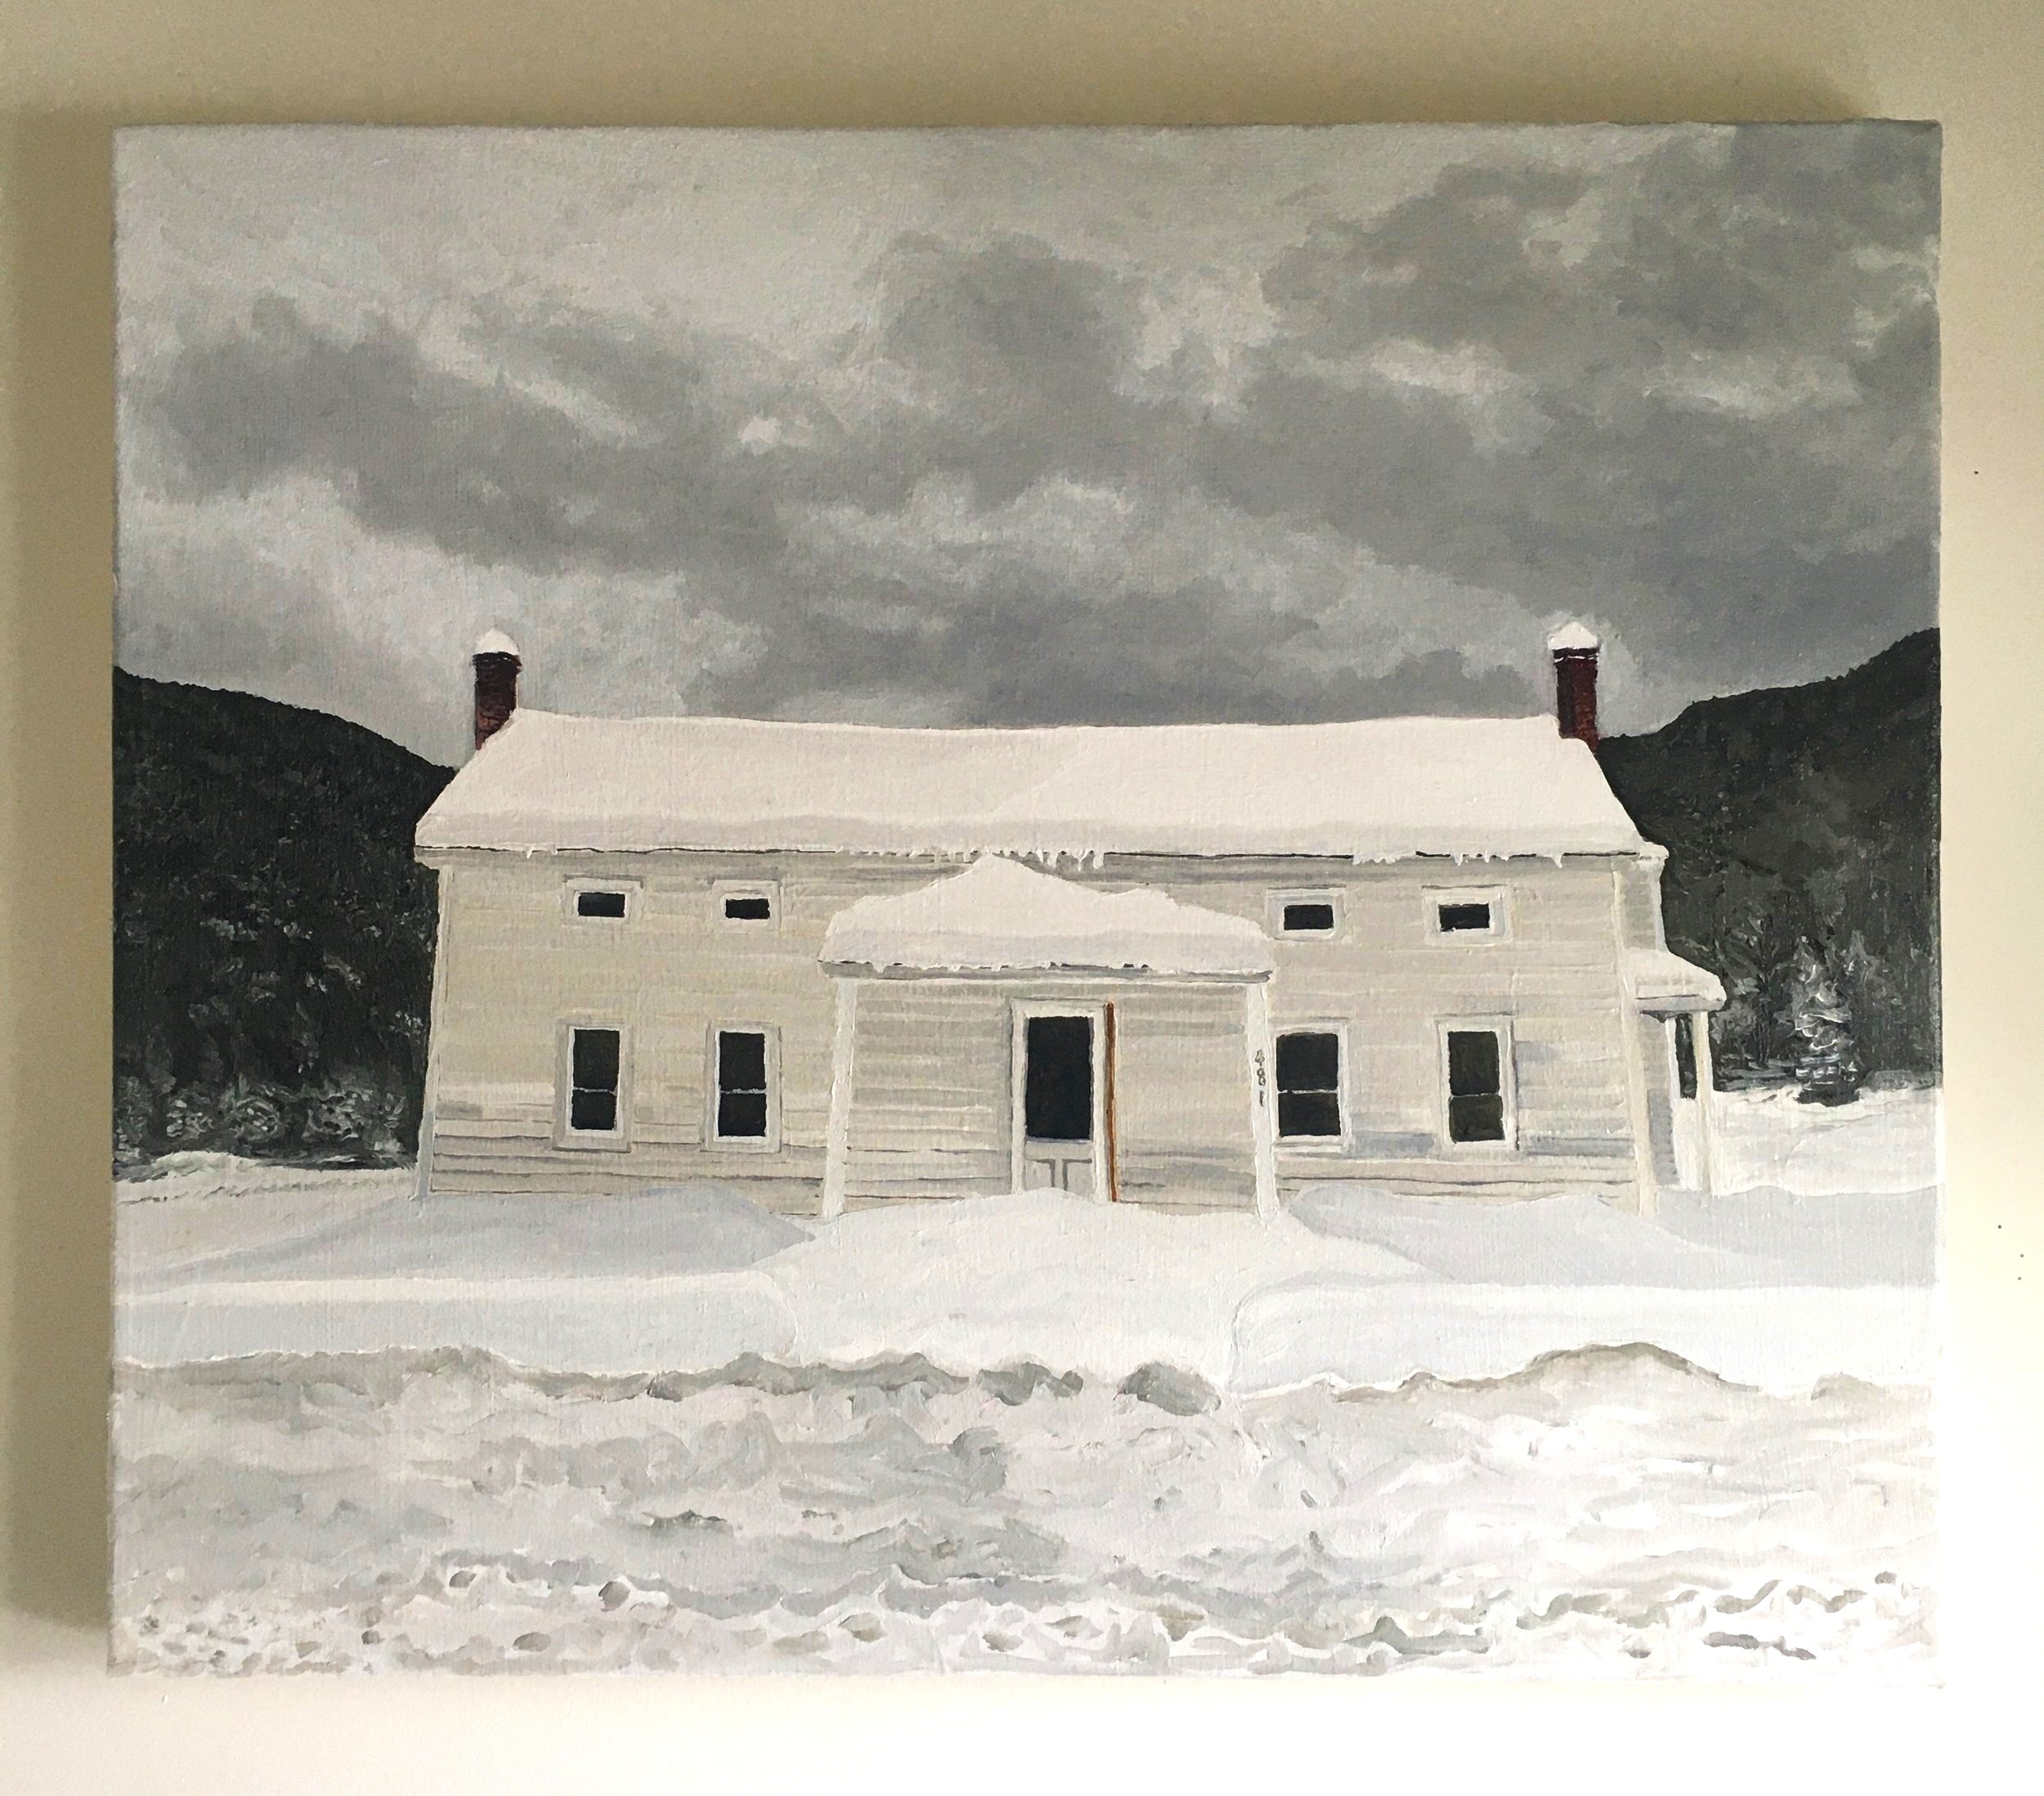   Dana’s House,  Oil on Canvas, 22” x 26”, 2021 